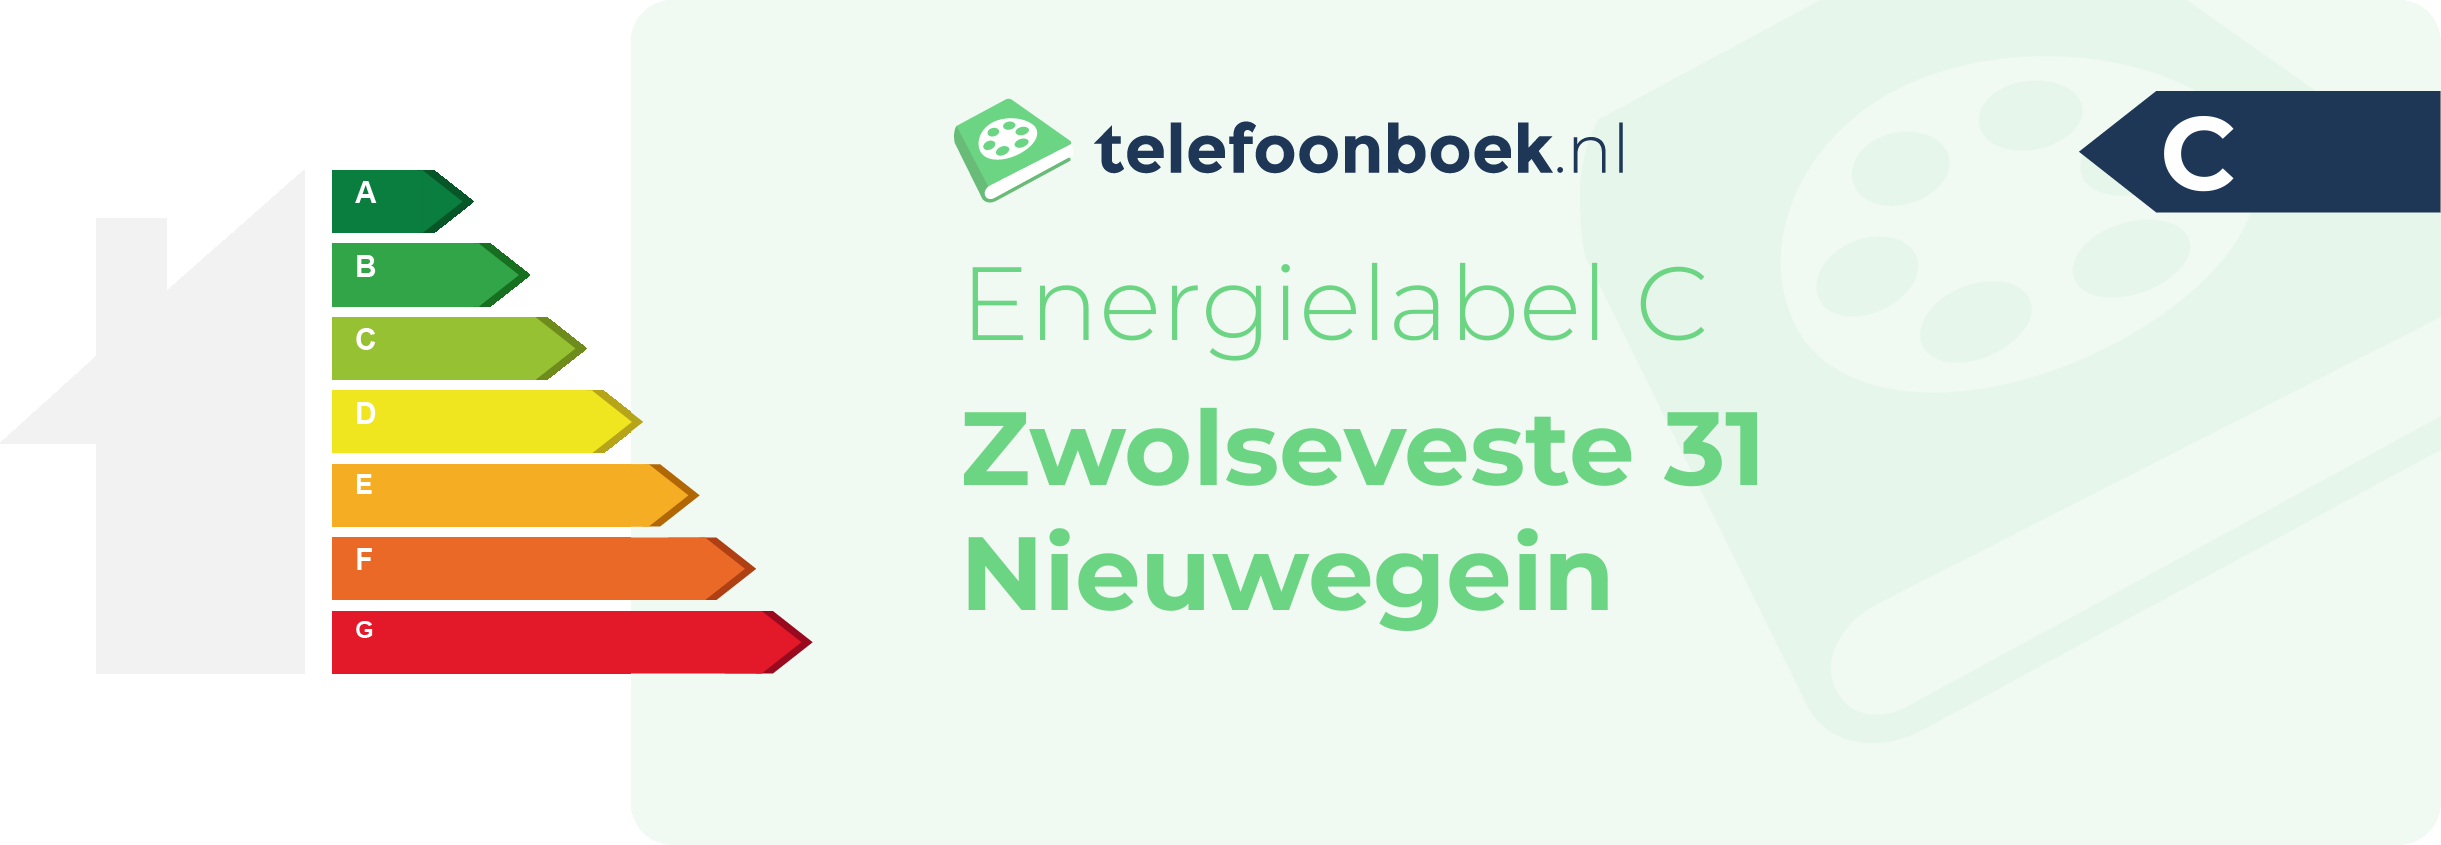 Energielabel Zwolseveste 31 Nieuwegein